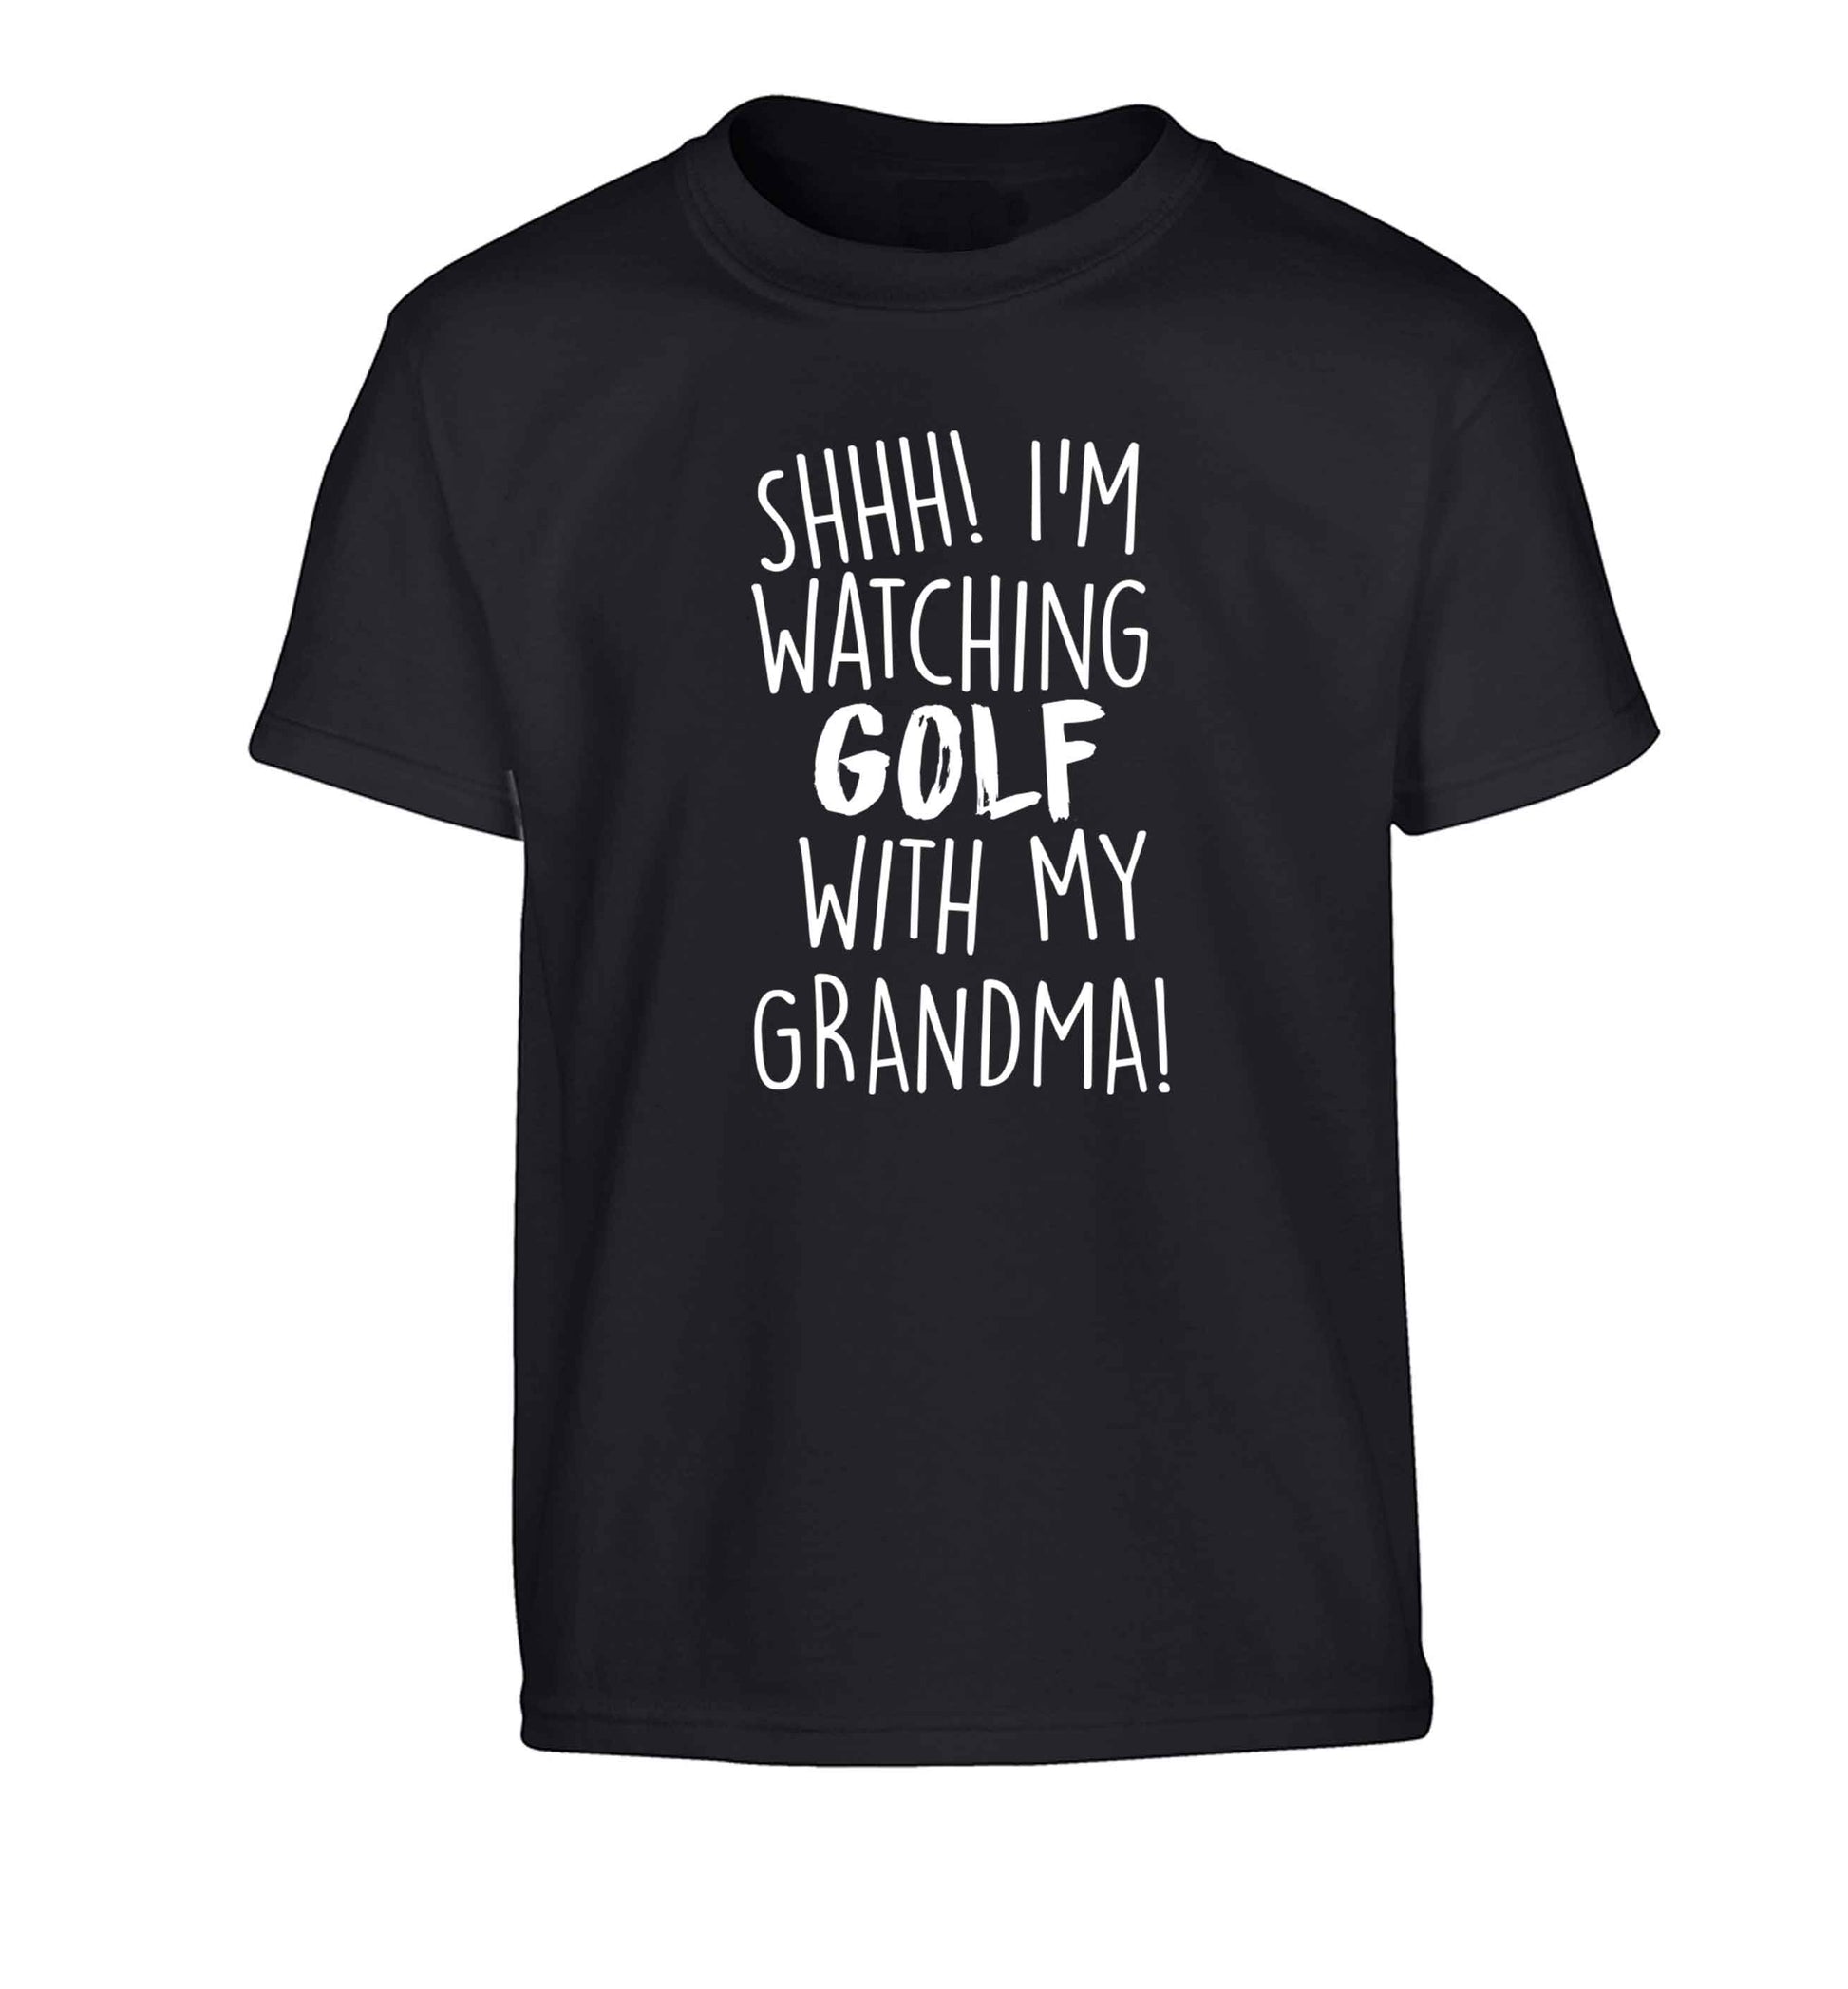 Shh I'm watching golf with my grandma Children's black Tshirt 12-13 Years